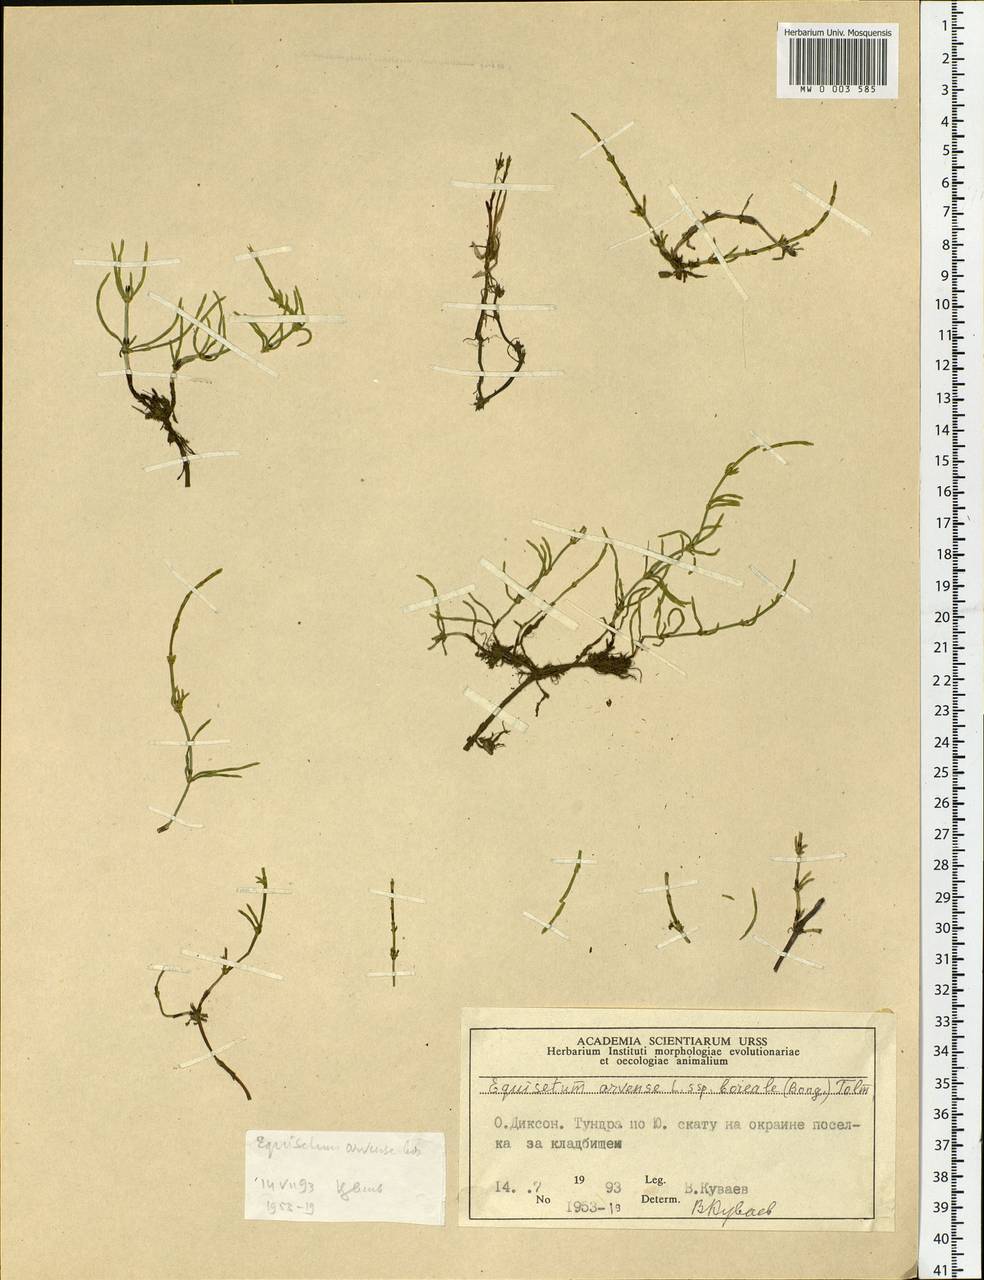 Equisetum arvense L., Siberia, Central Siberia (S3) (Russia)